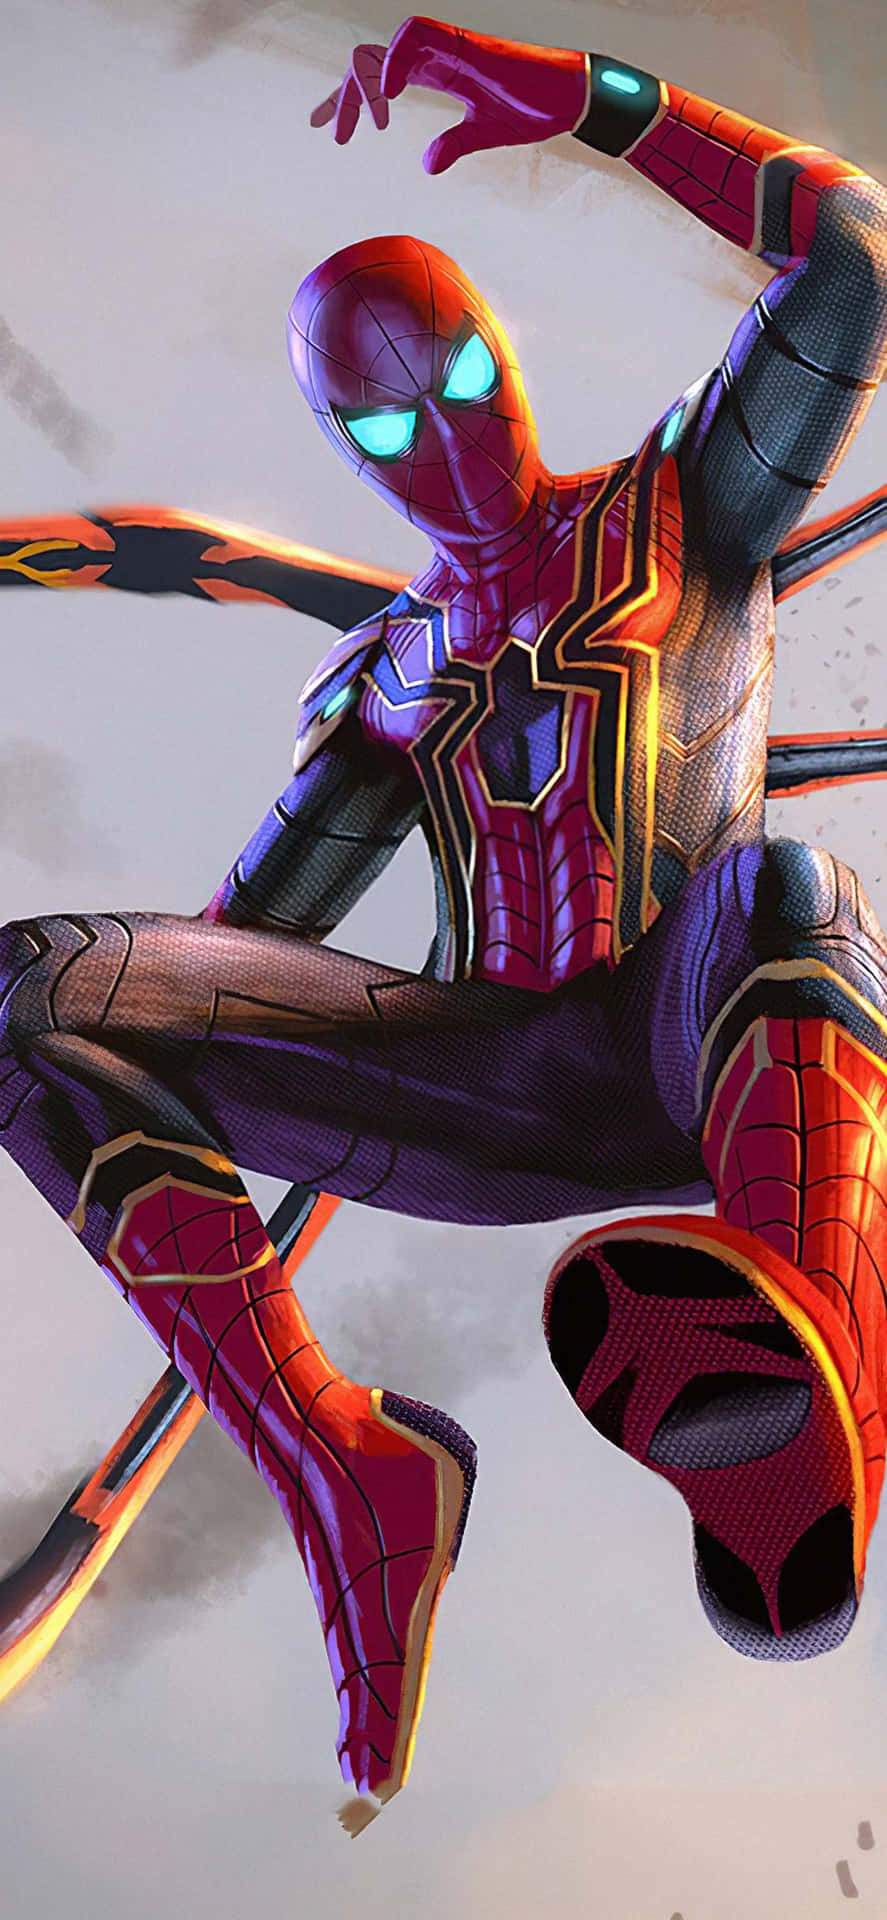 Escalahasta La Cima Con Un Estético De Spider-man Fondo de pantalla